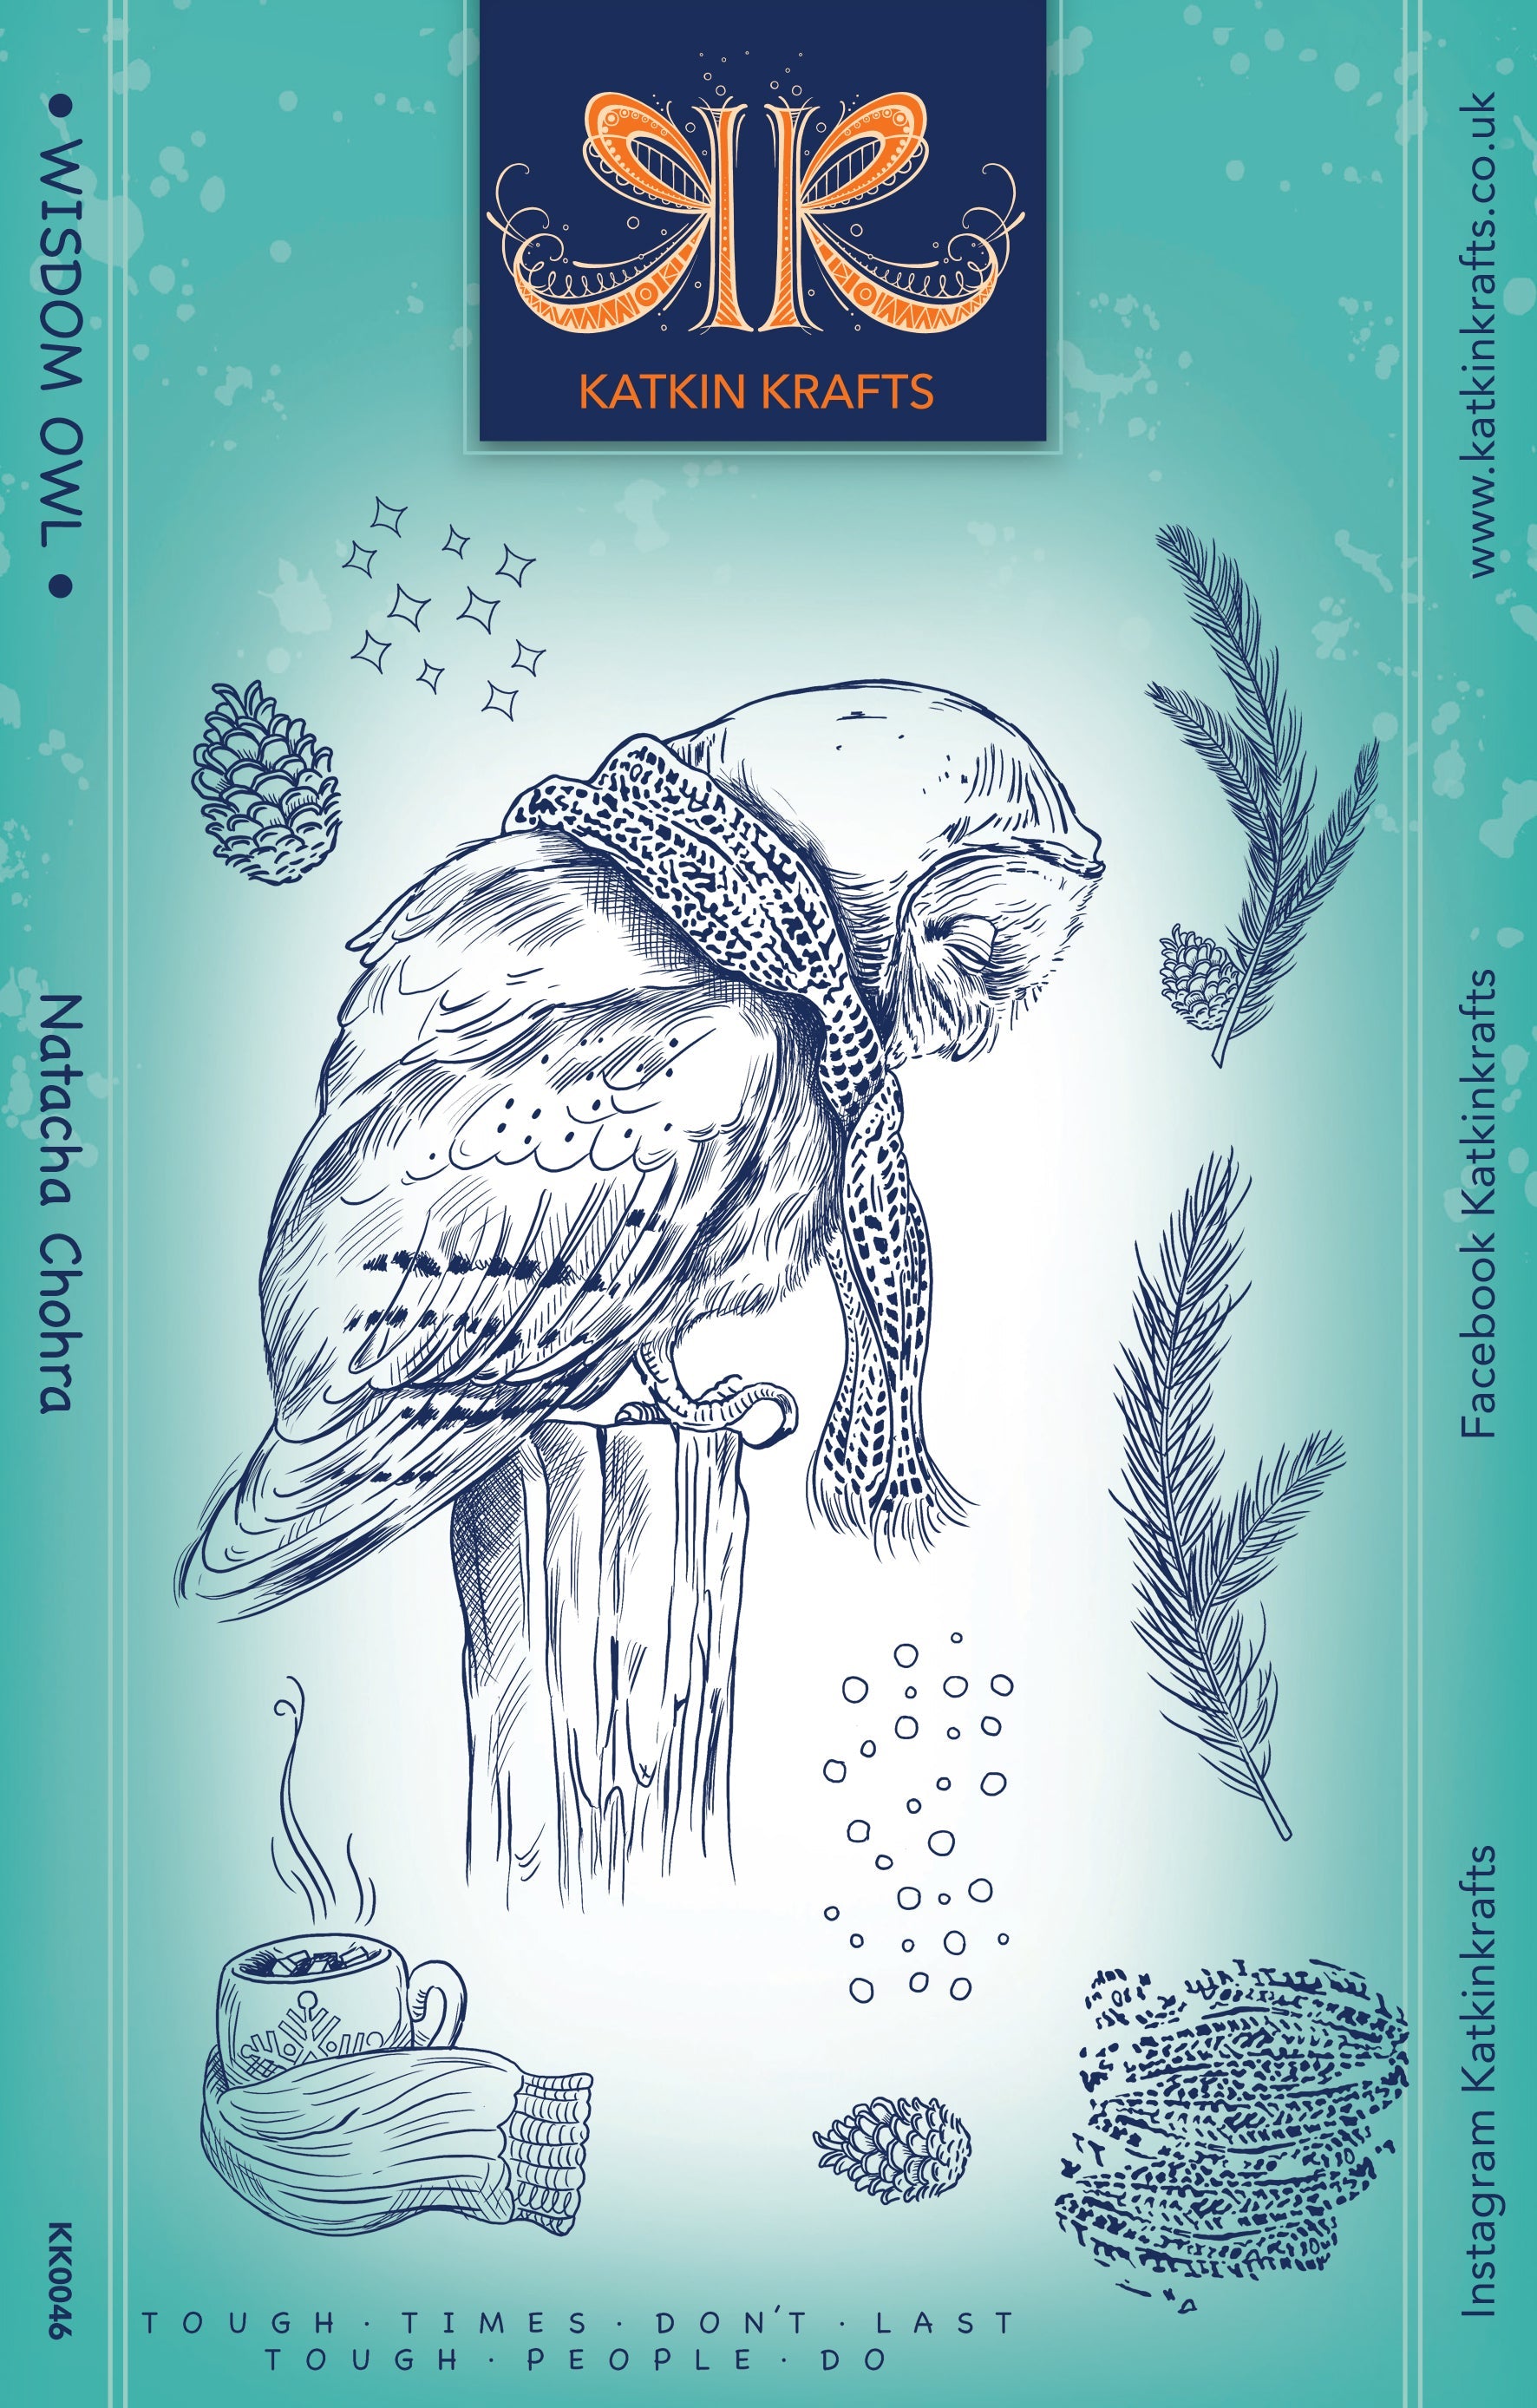 Katkin Krafts Wisdom Owl 6 in x 8 in Clear Stamp Set